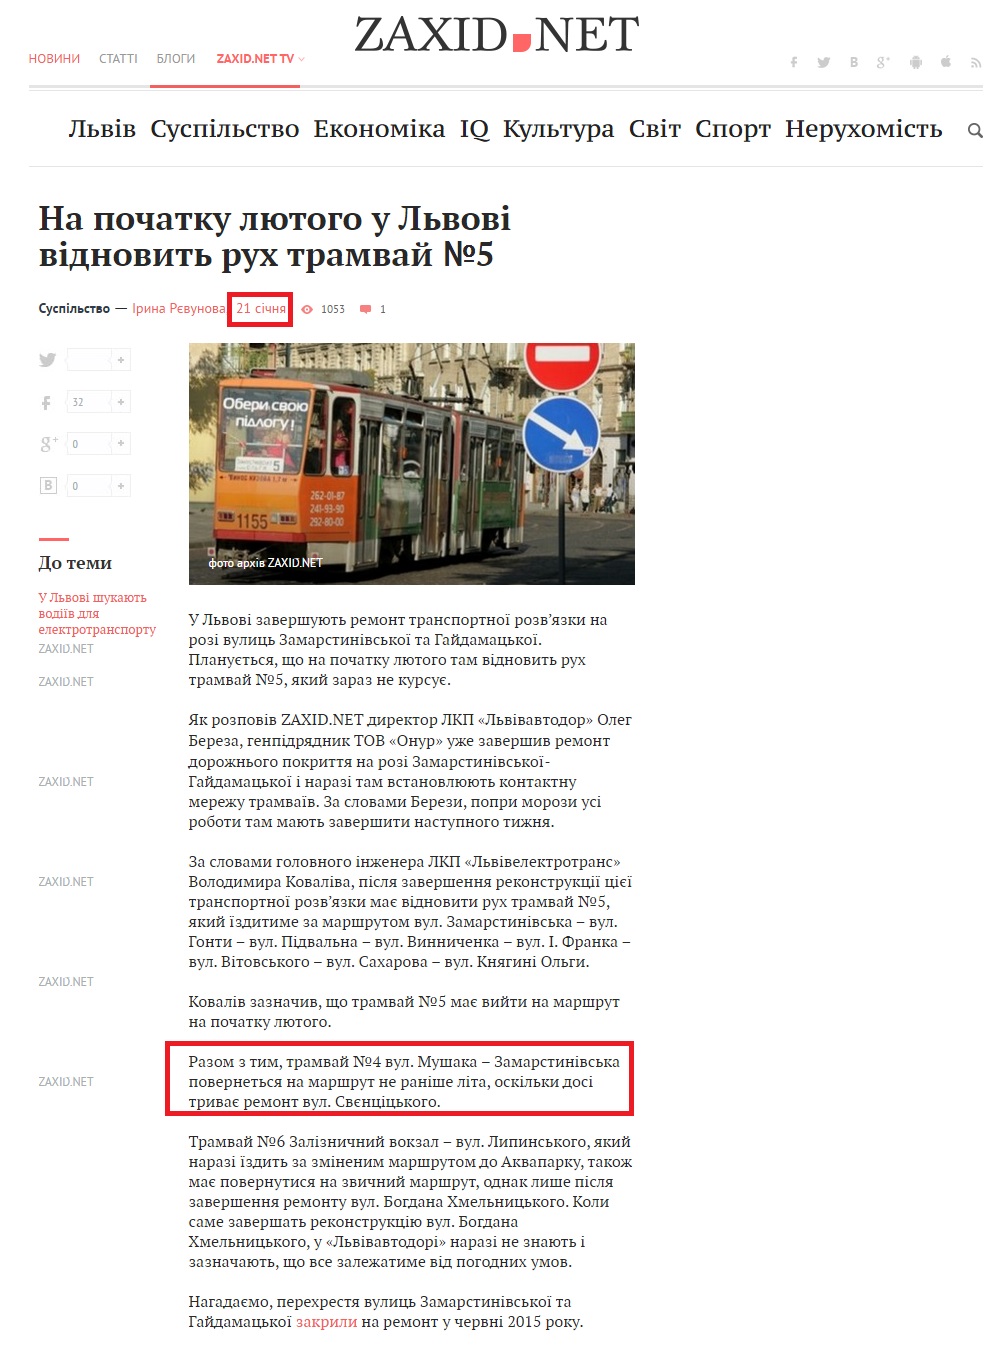 http://zaxid.net/news/showNews.do?na_pochatku_lyutogo_u_lvovi_vidnovit_ruh_tramvay_5&objectId=1379971